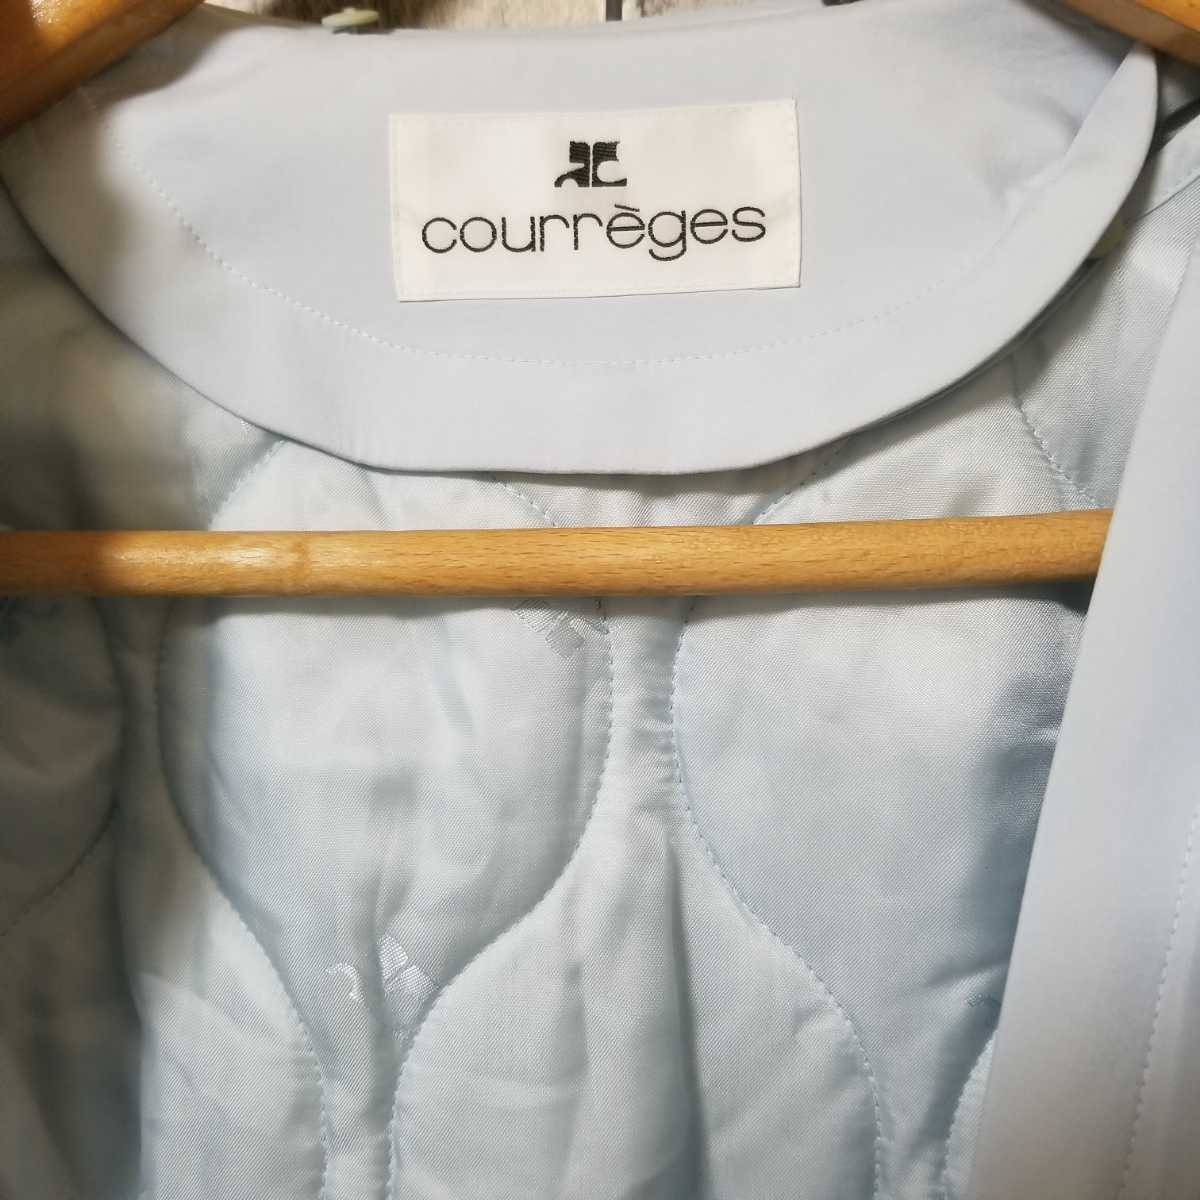 courreges Courreges пальто длинный подкладка с хлопком размер 9AR ремень голубой серия женский 